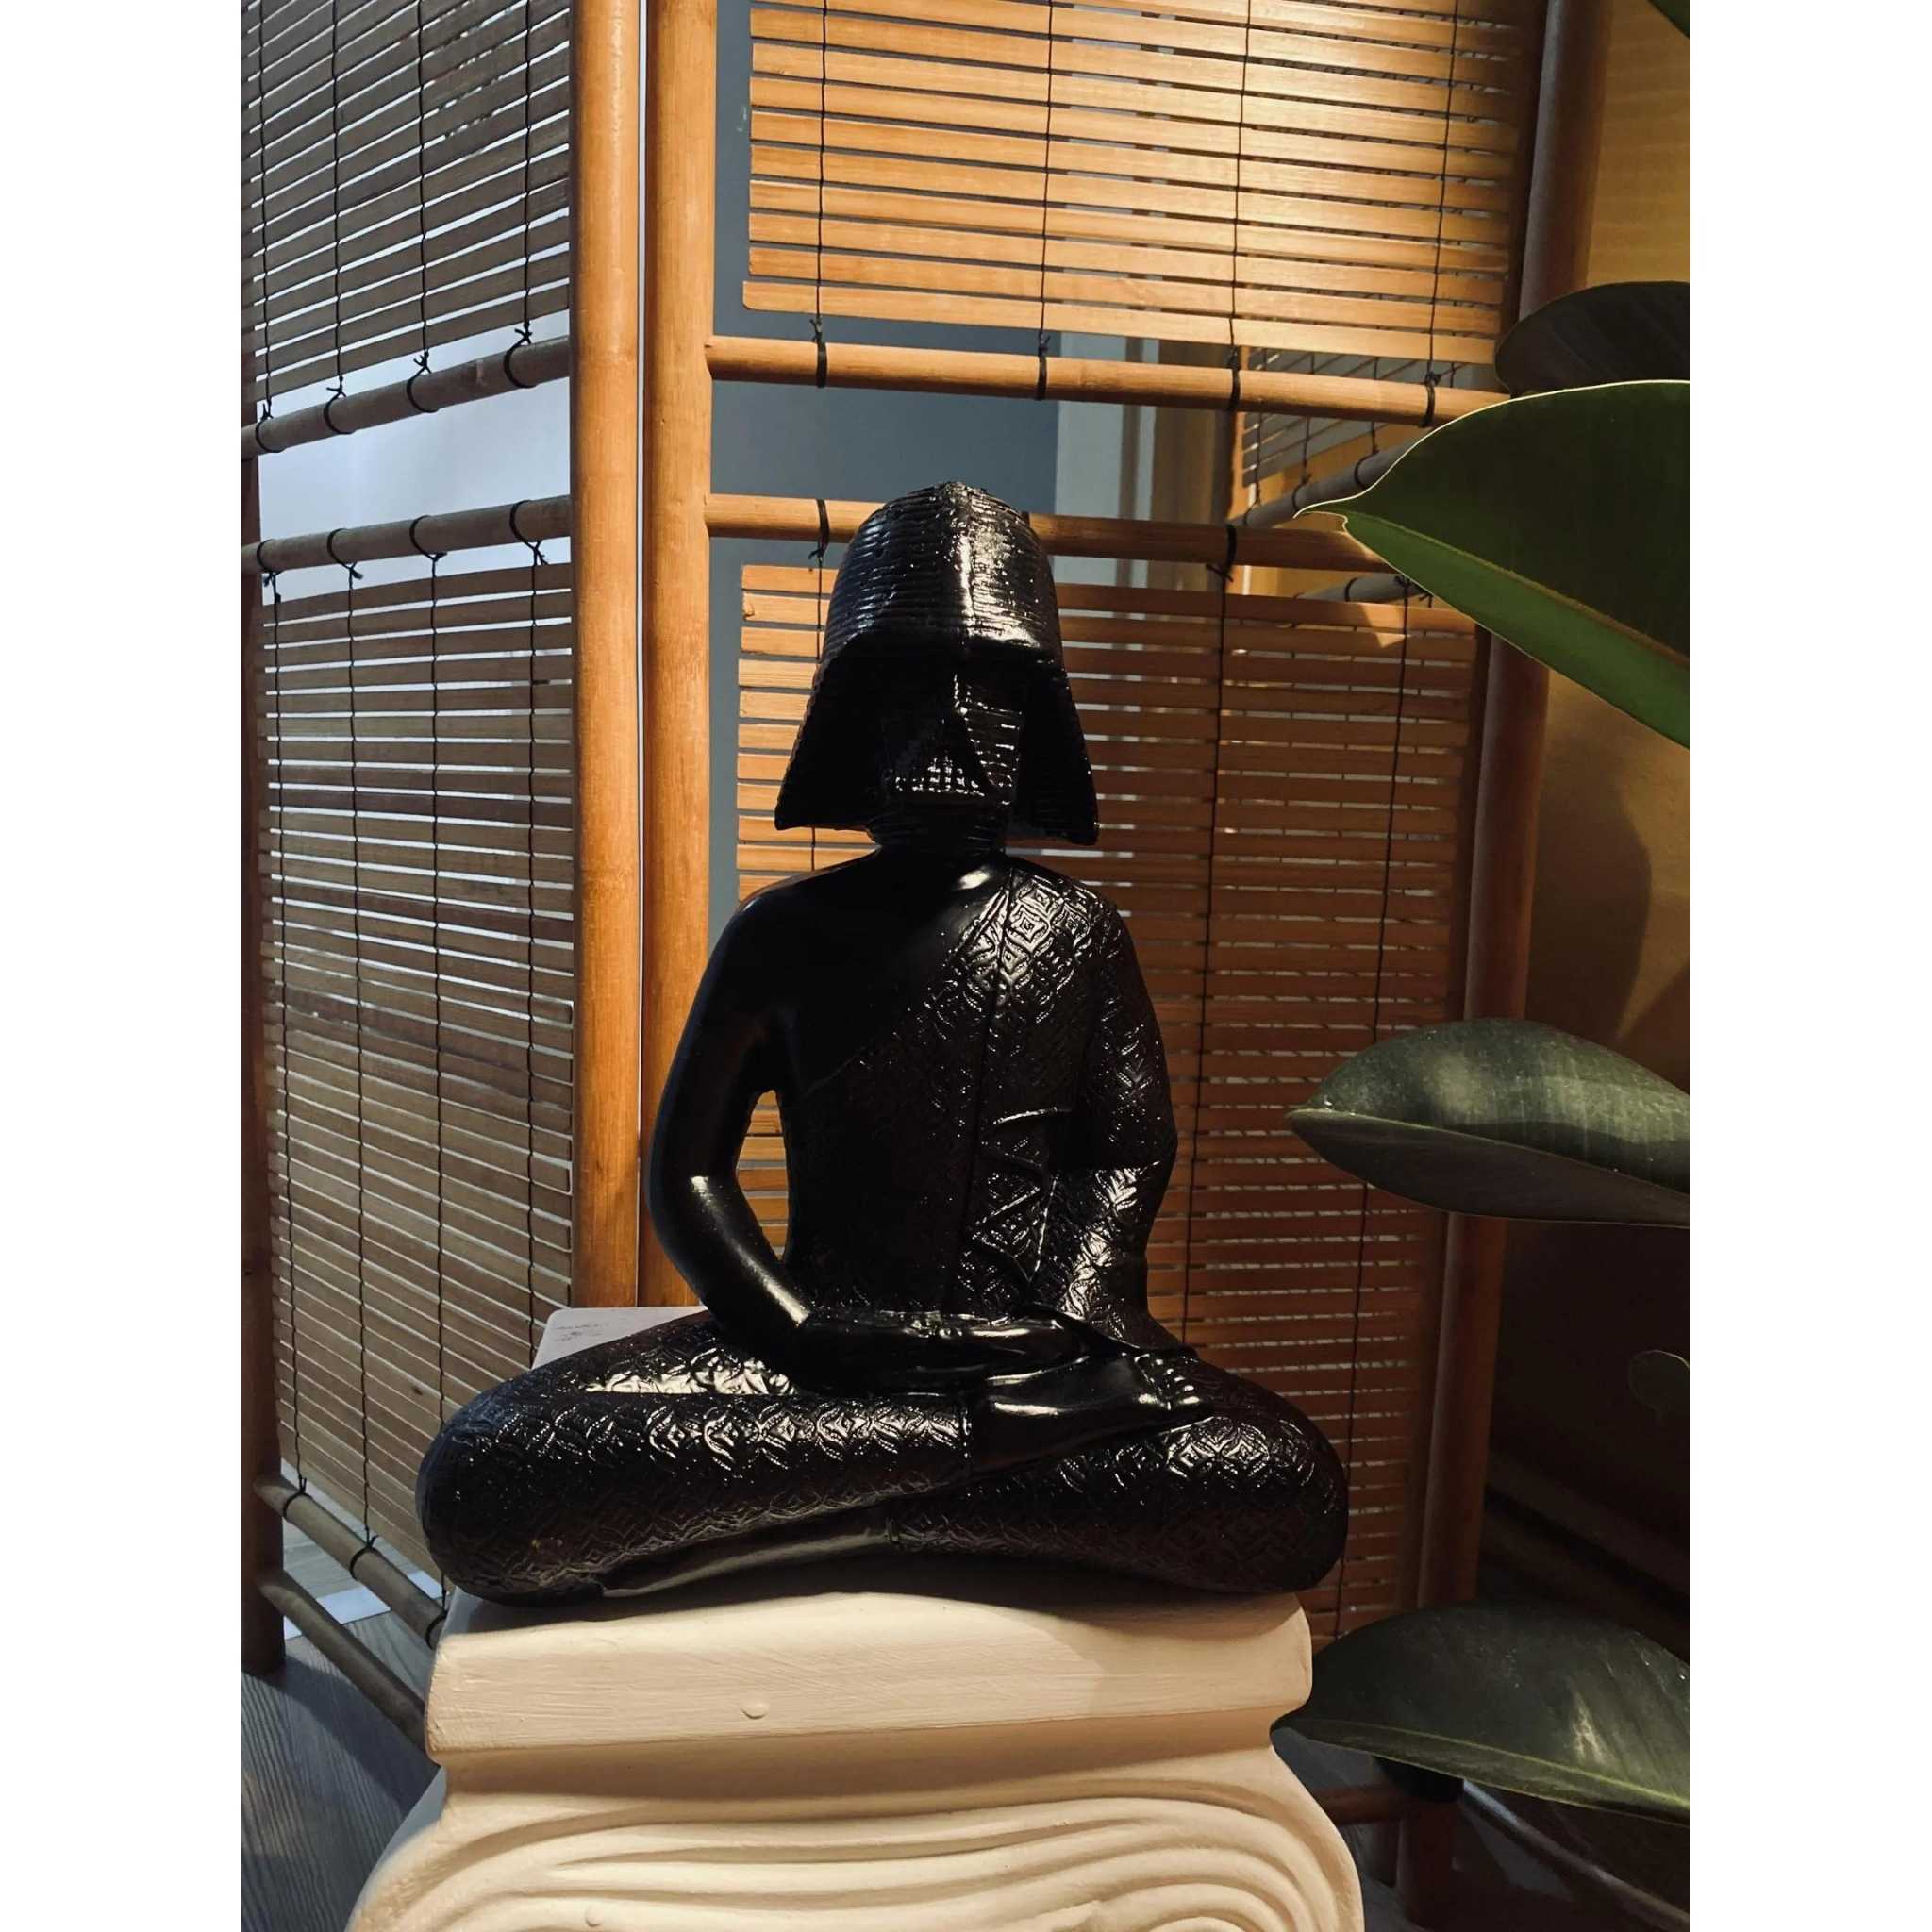 Darth Vader in Meditation